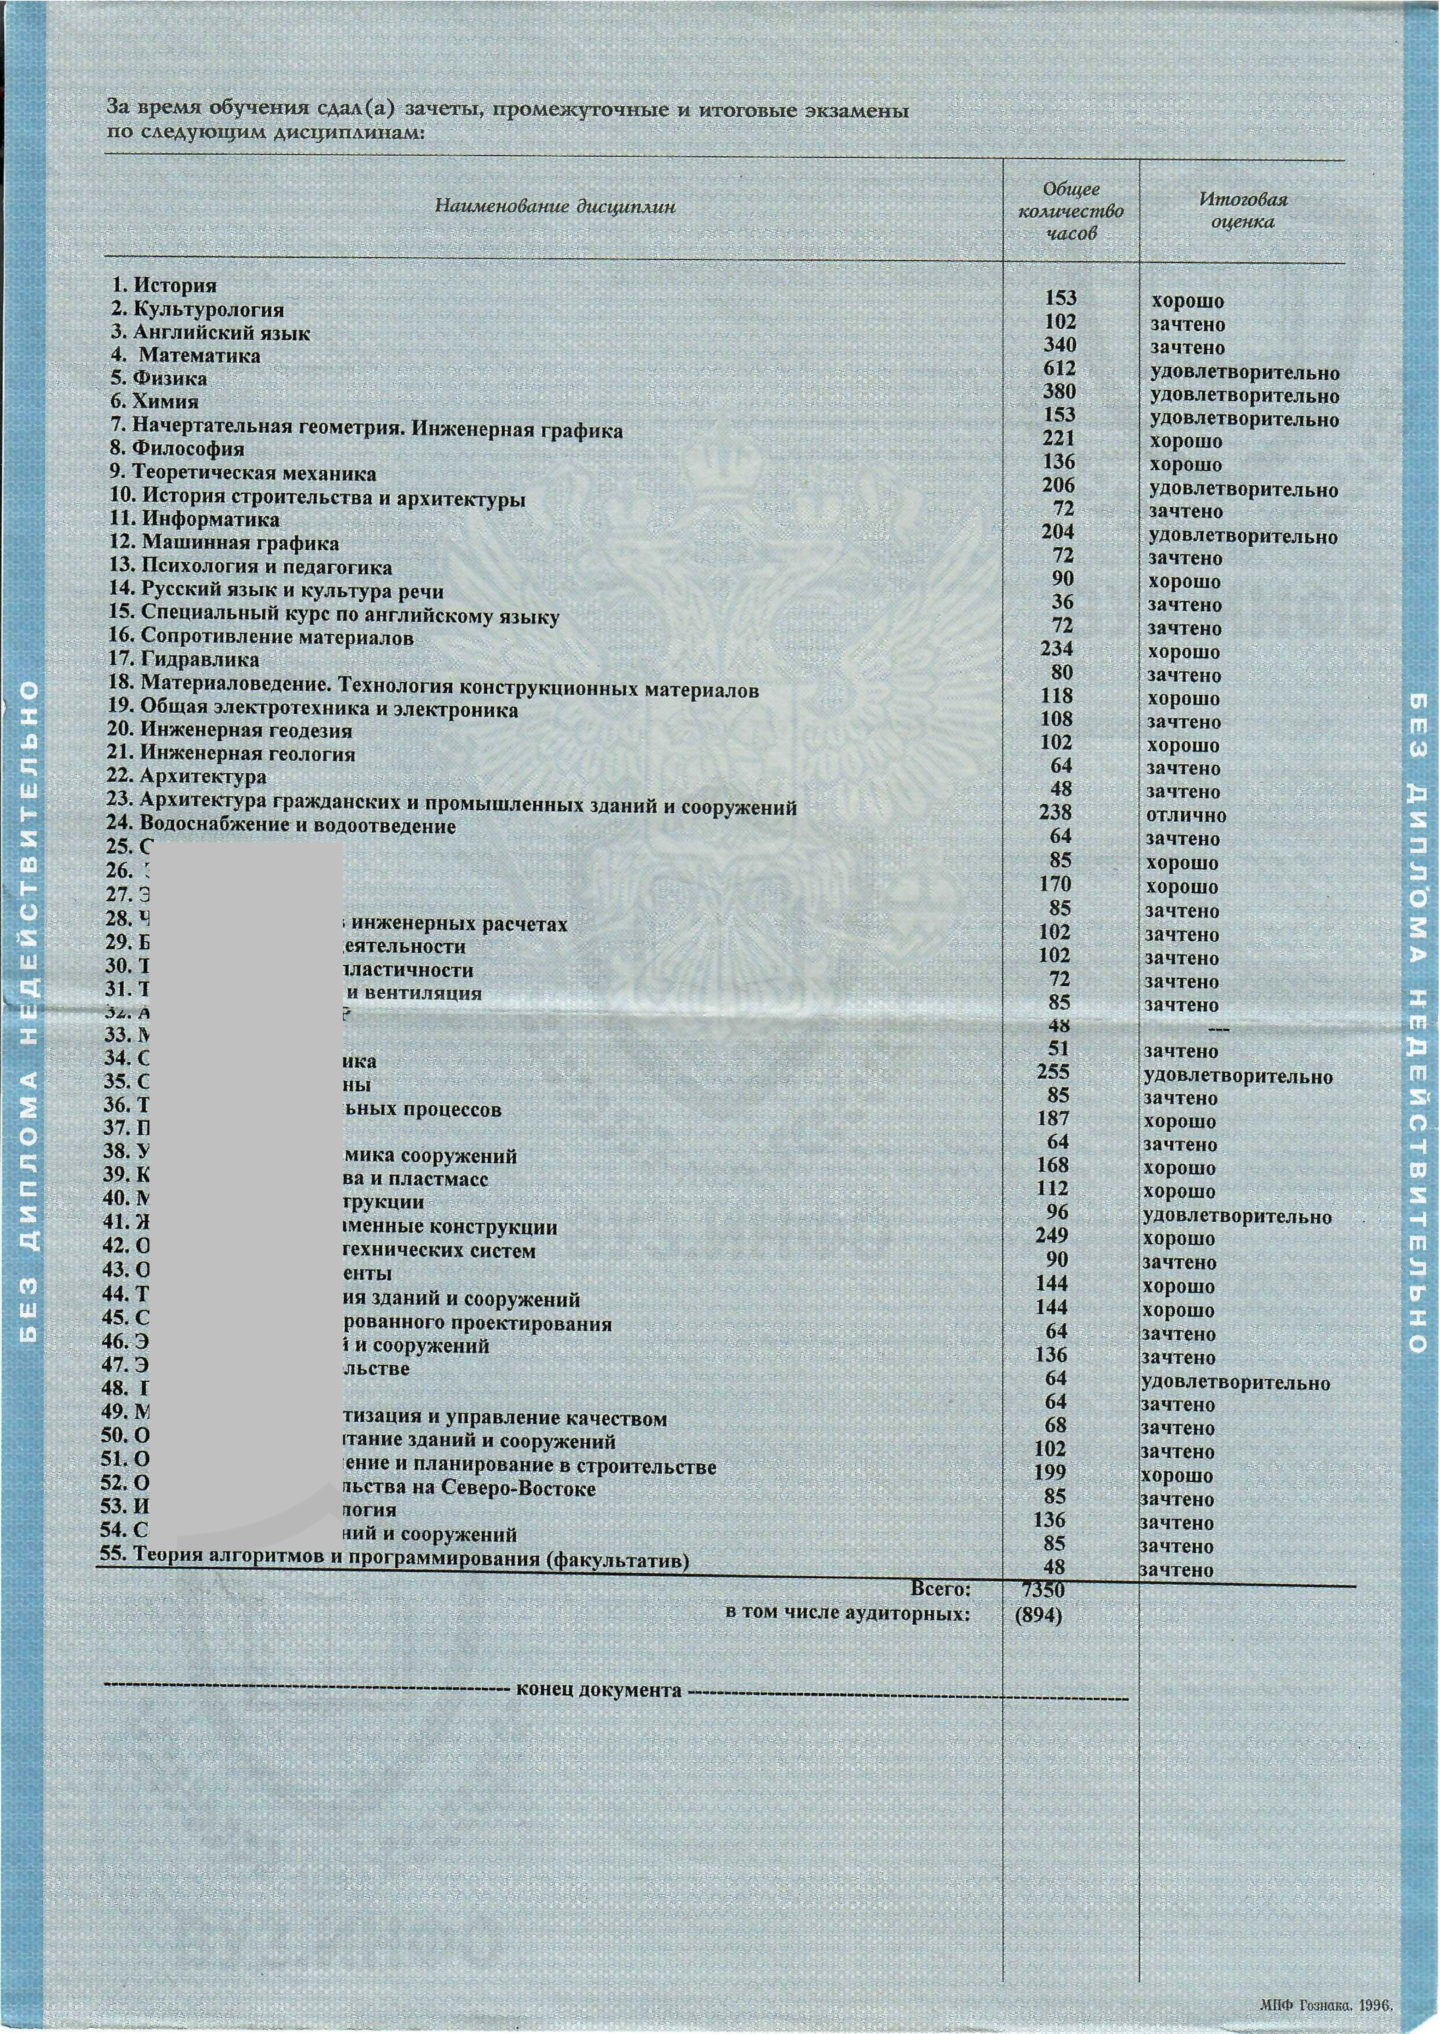 Северный международный университет (г. Магадан) ПГС, предметы диплома о высшем образовании 2006 года